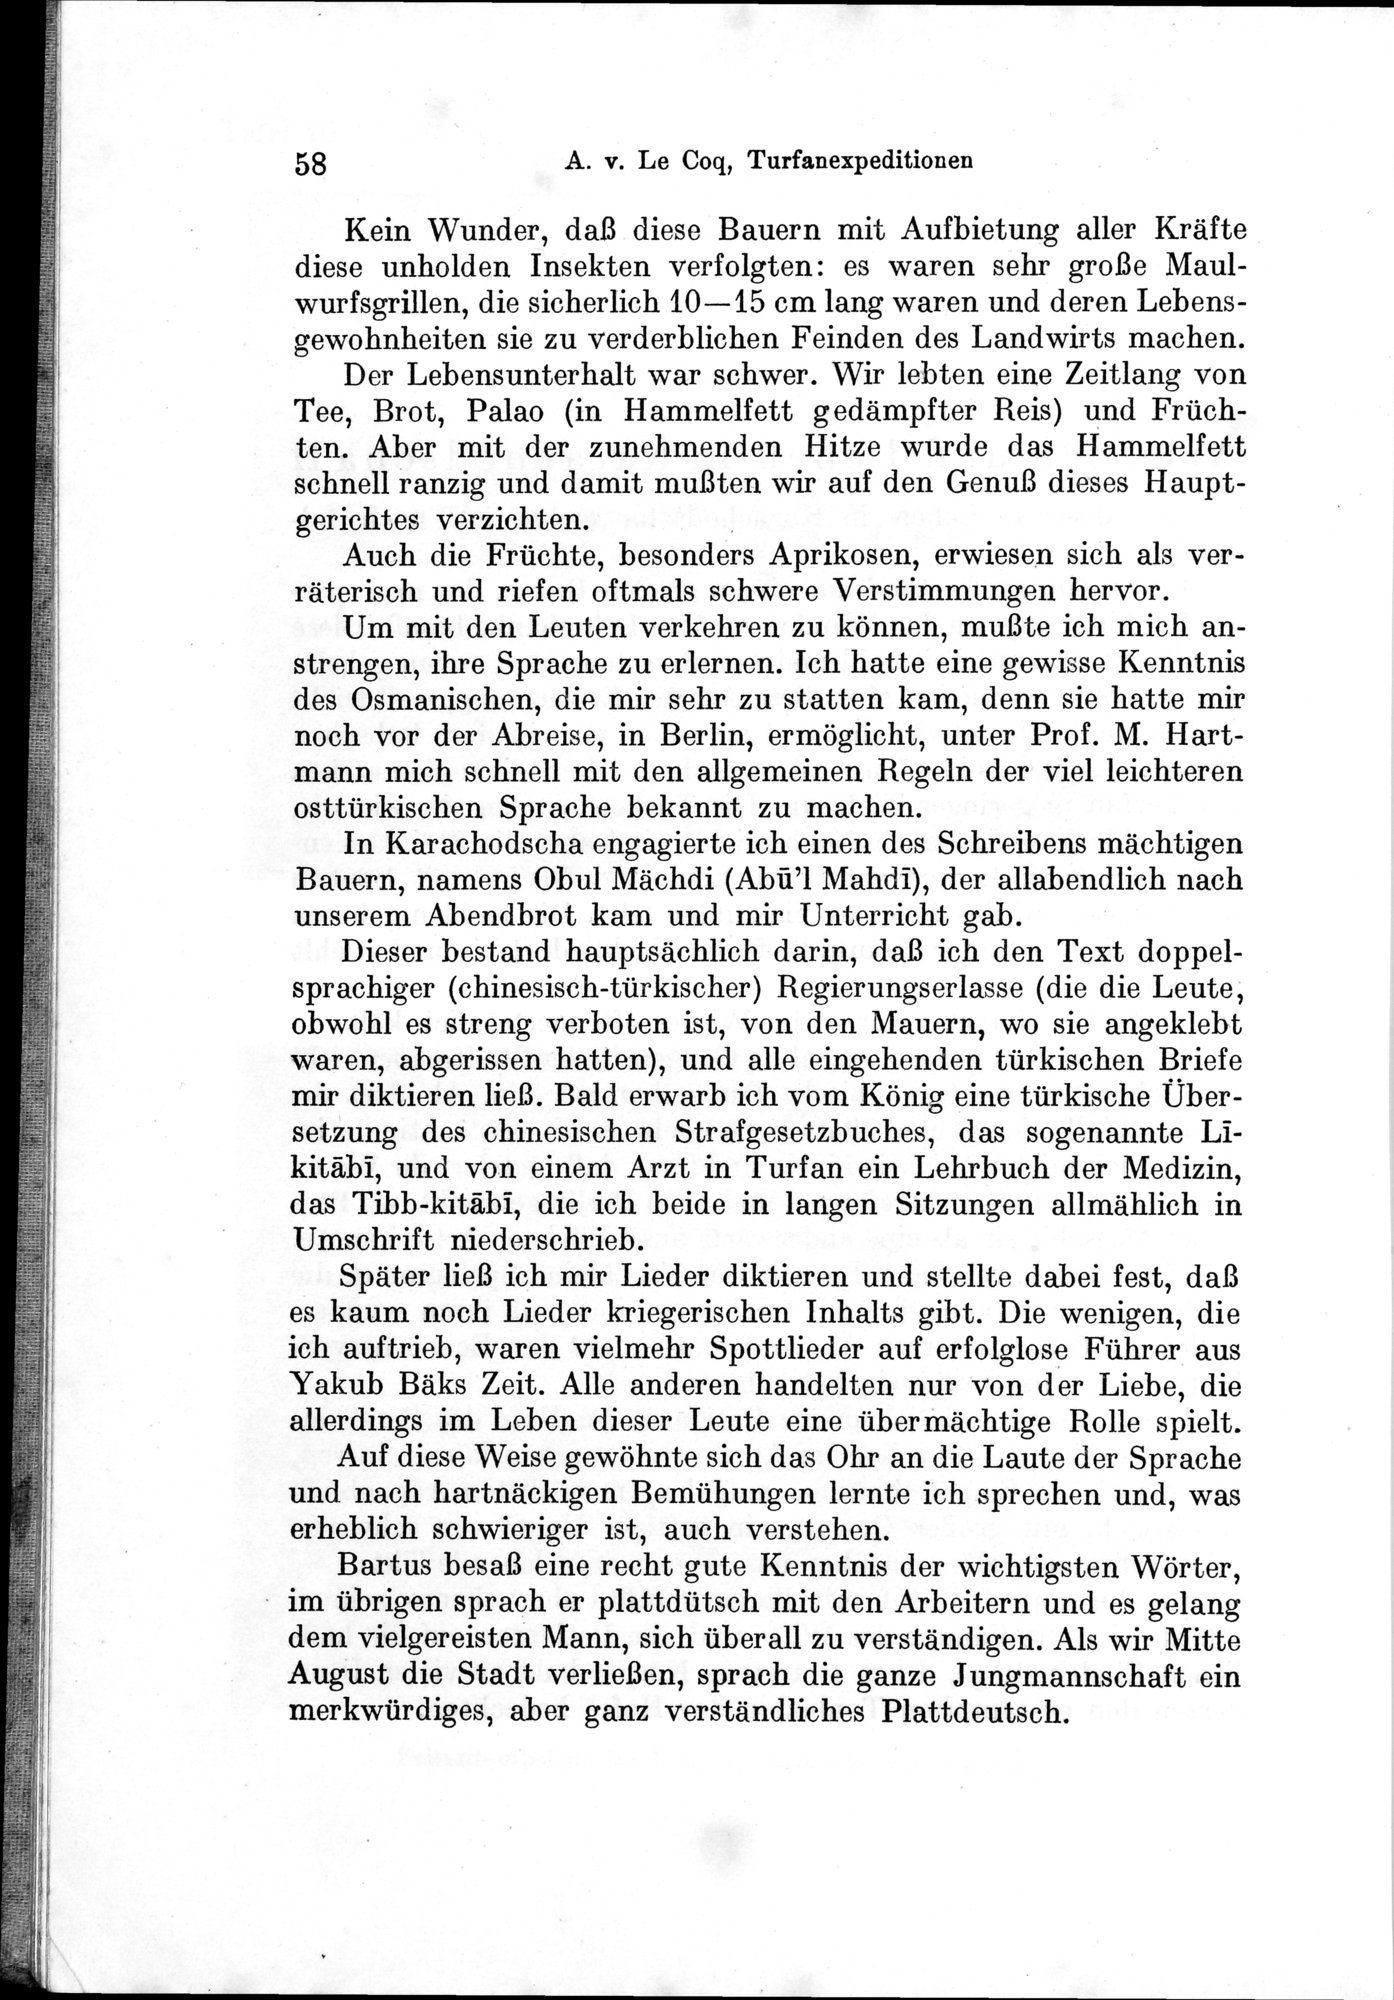 Auf Hellas Spuren in Ostturkistan : vol.1 / Page 90 (Grayscale High Resolution Image)